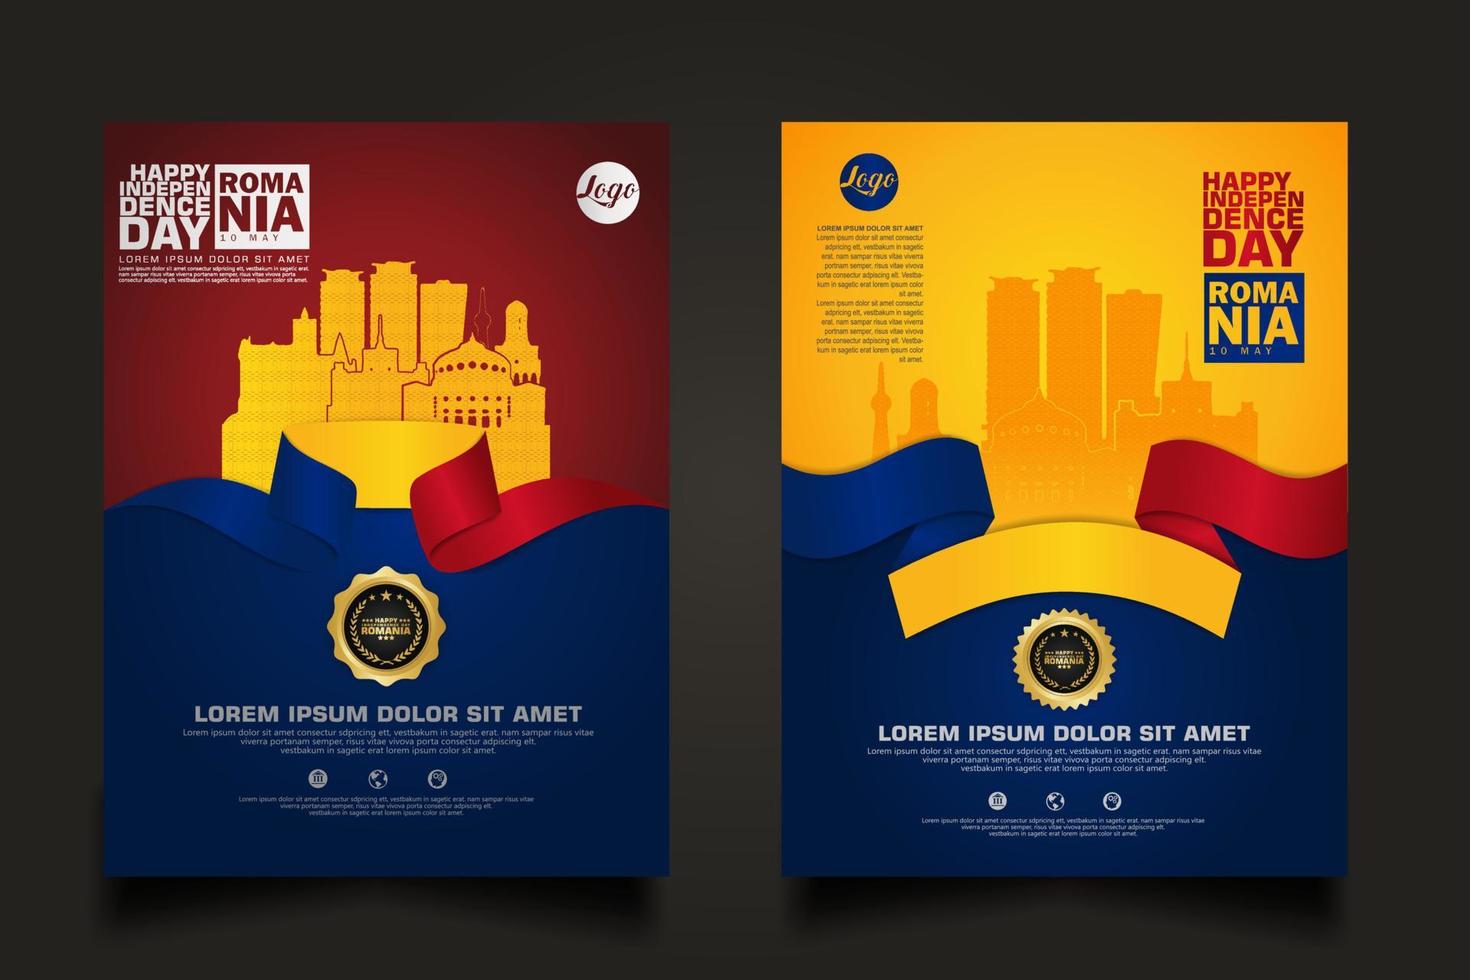 ställa in affisch kampanjer Rumänien glad självständighetsdagen bakgrundsmall vektor